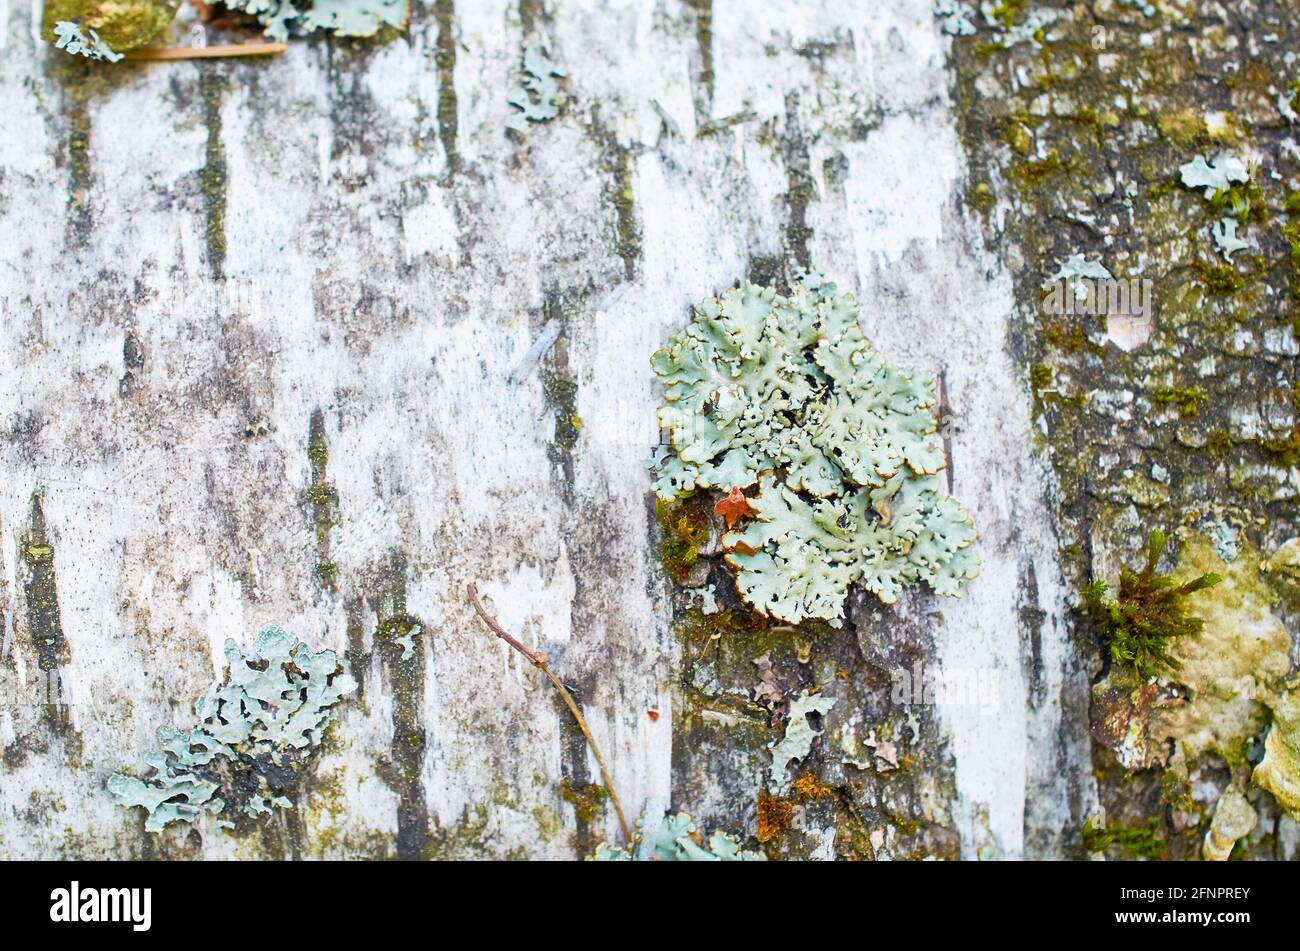 Parmelia sulcata lichen on birch bark. Macro Stock Photo